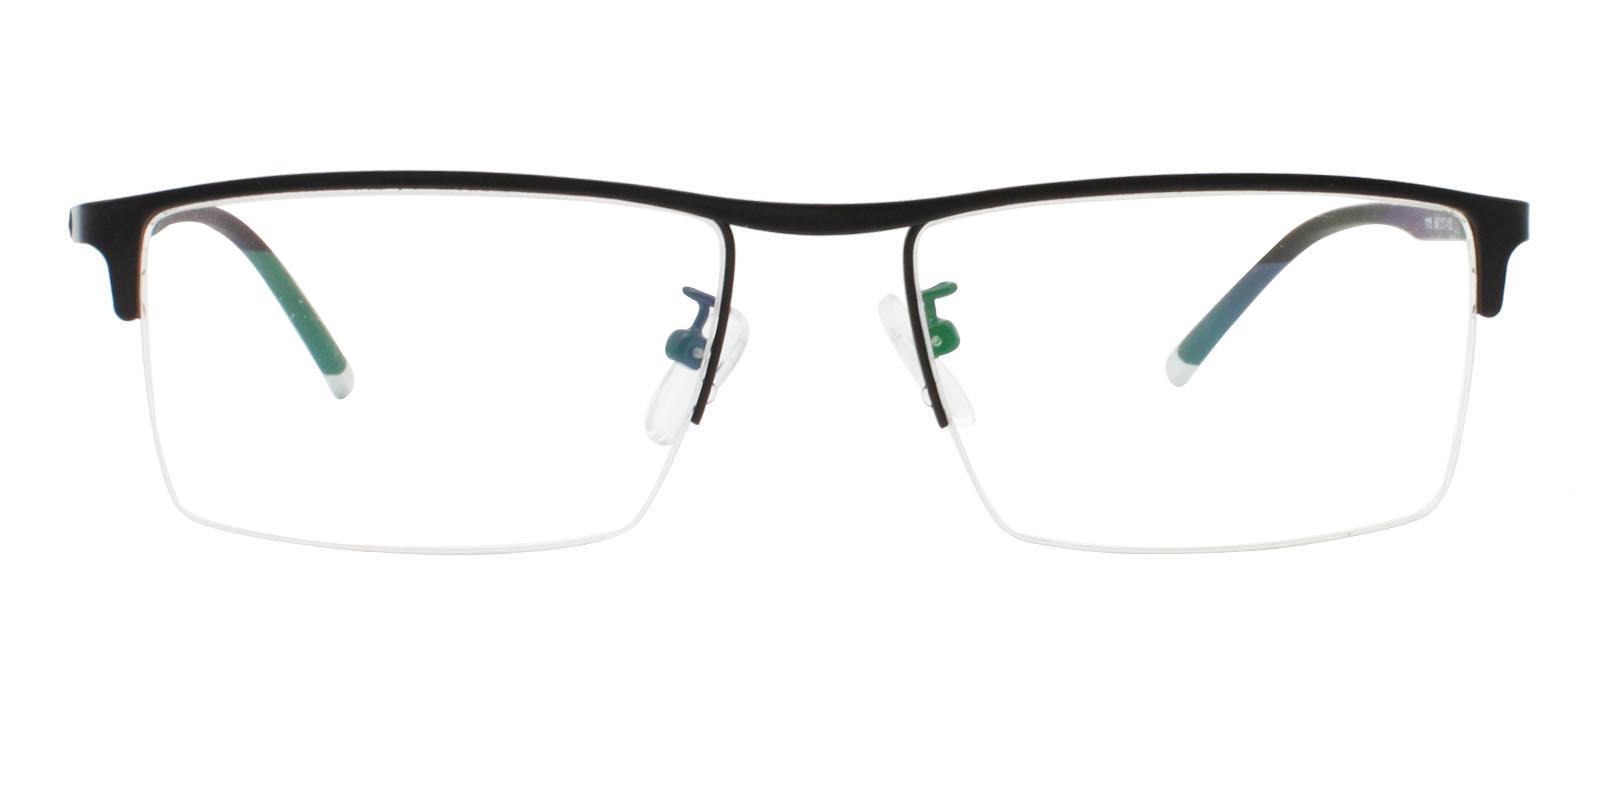 Jayden Black Metal Eyeglasses , NosePads Frames from ABBE Glasses